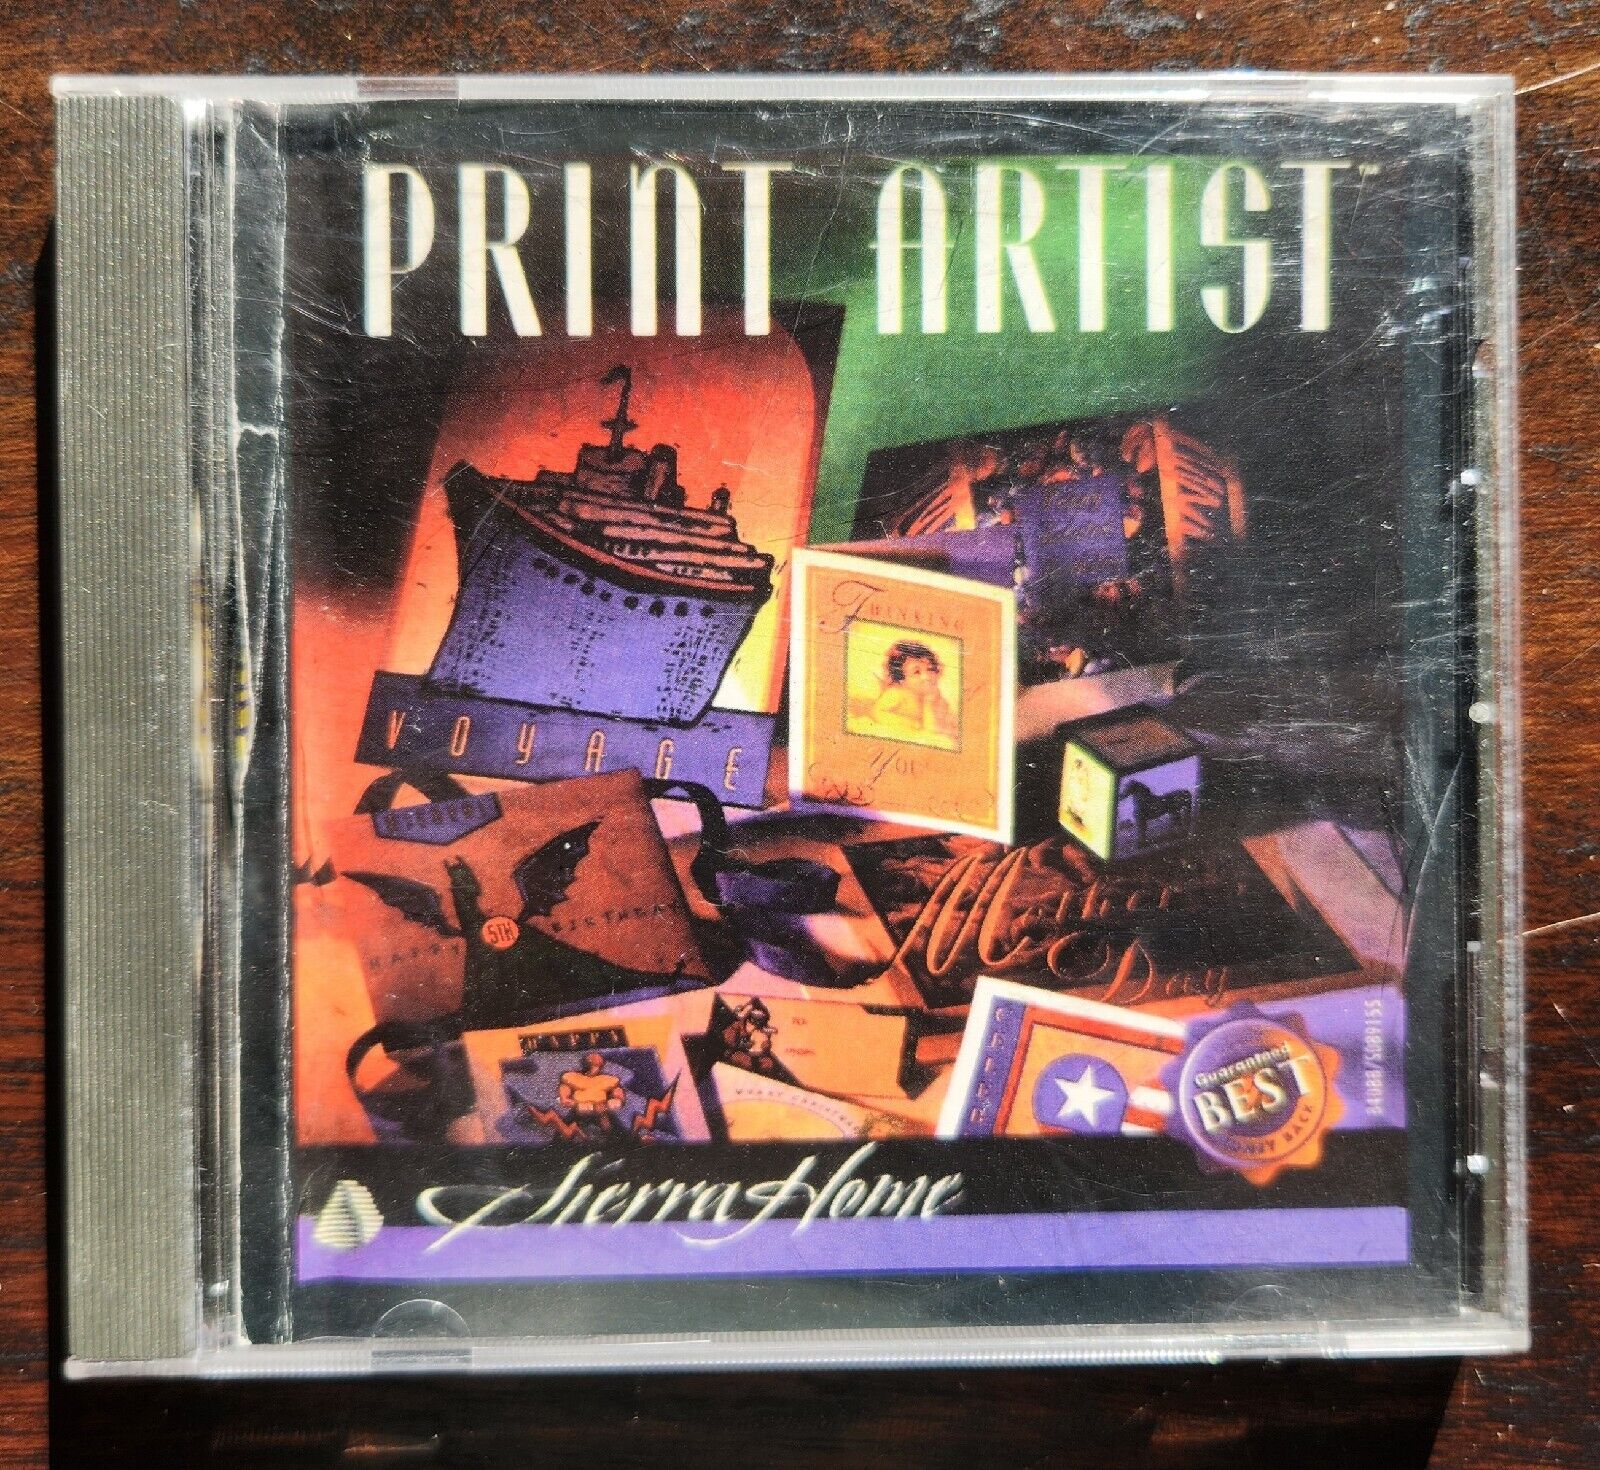 Sierra Home Print Artist CD ROM 1996